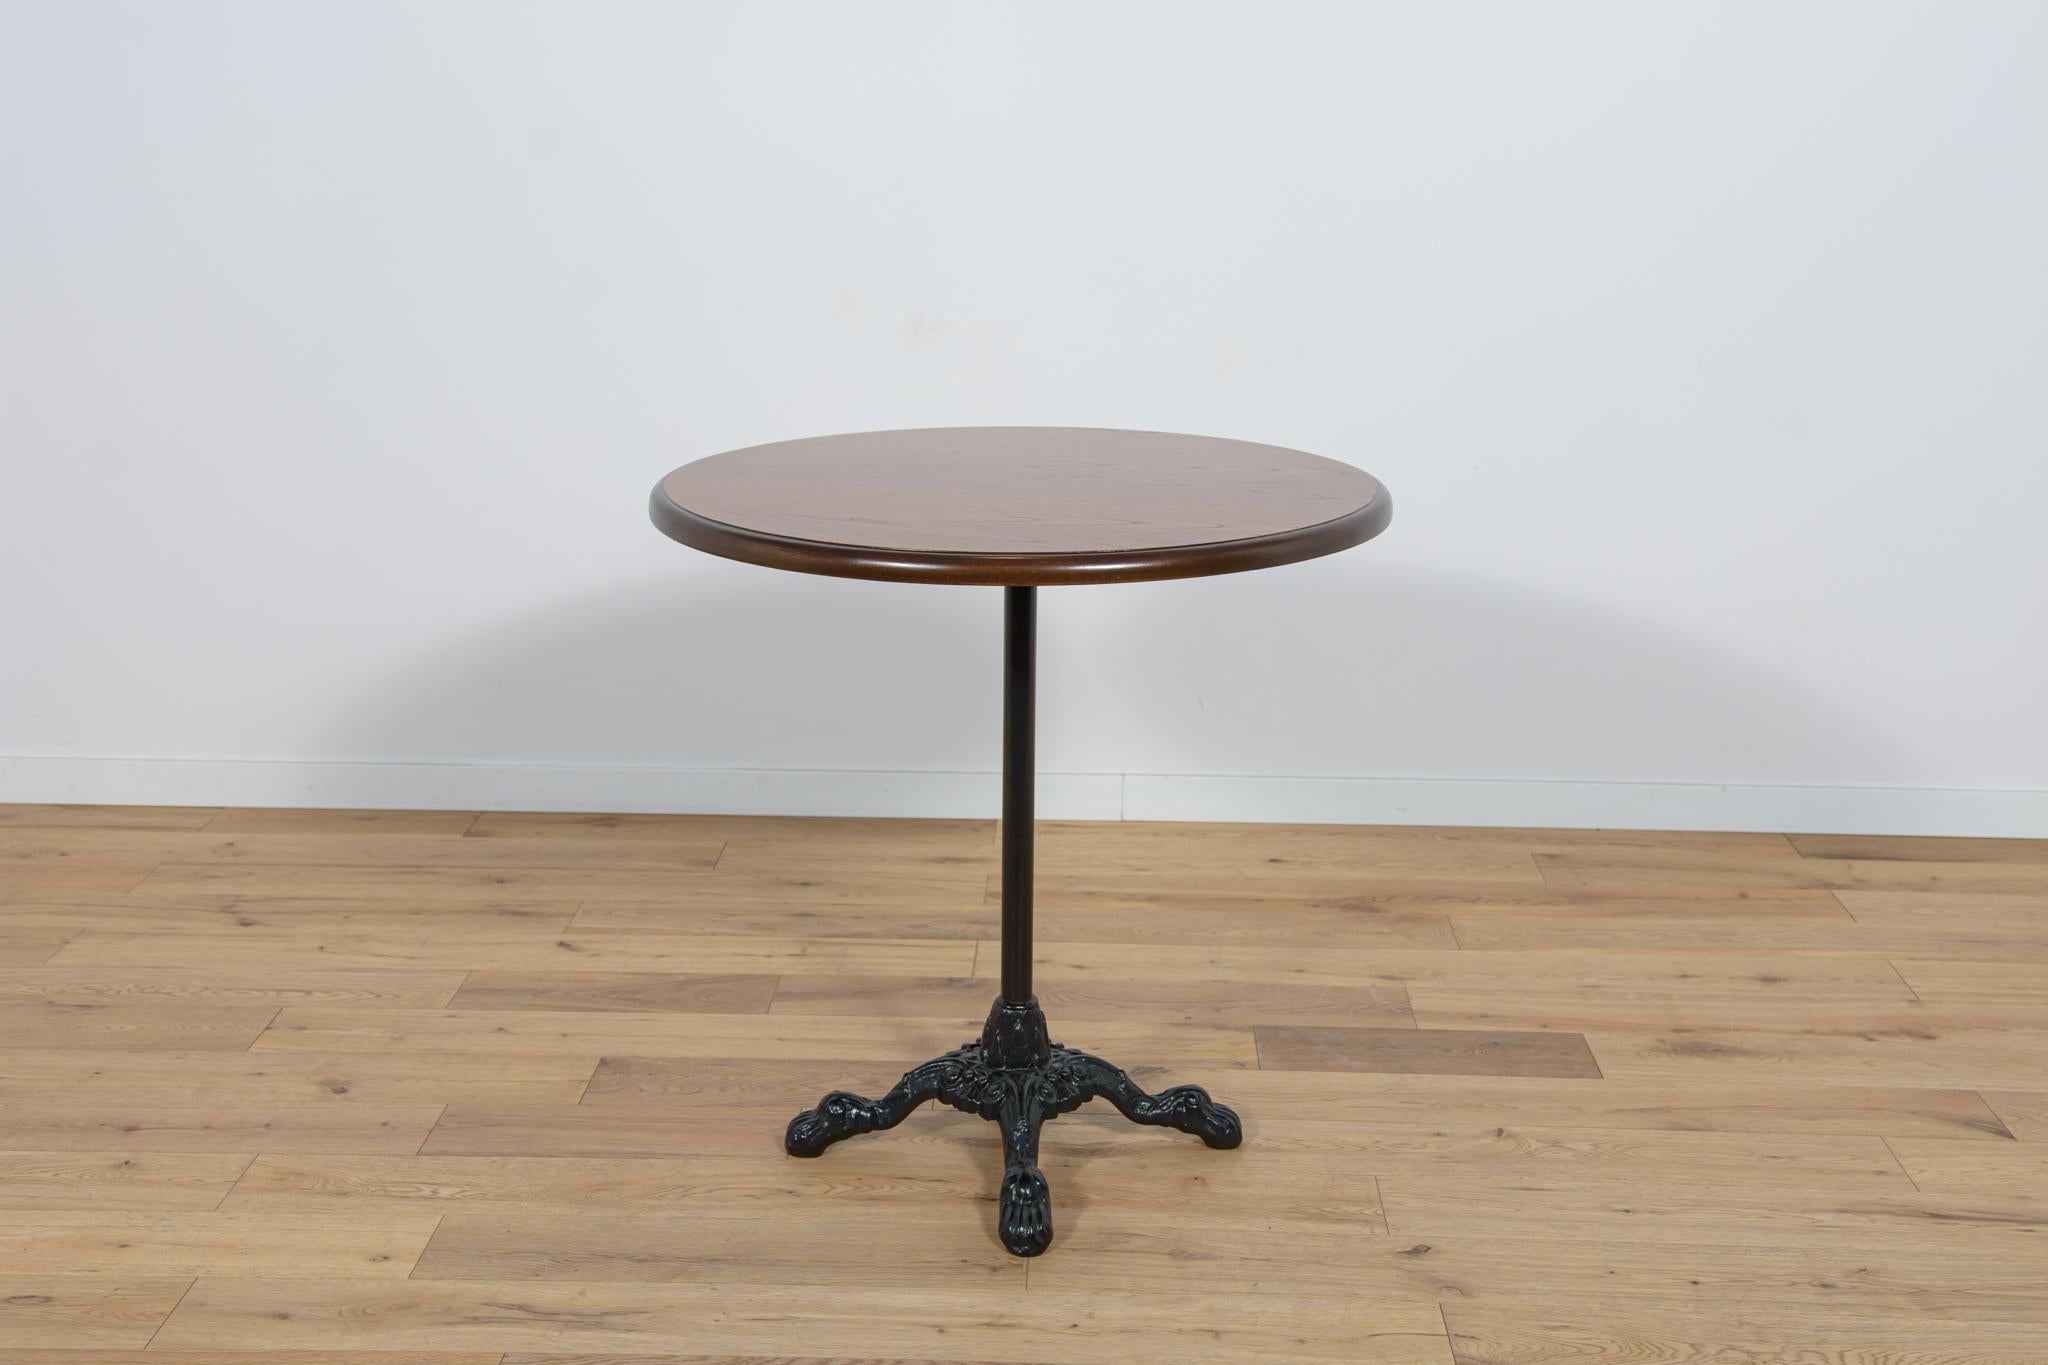 Couchtisch im Jugendstil, Anfang des 20. Jahrhunderts in Großbritannien. Tisch nach der Renovierung, Platte aus Eichenholz, von der alten Oberfläche gereinigt, mit Eichenbeize gebeizt und mit einem starken Lack versehen. Das Bein aus Gusseisen wurde